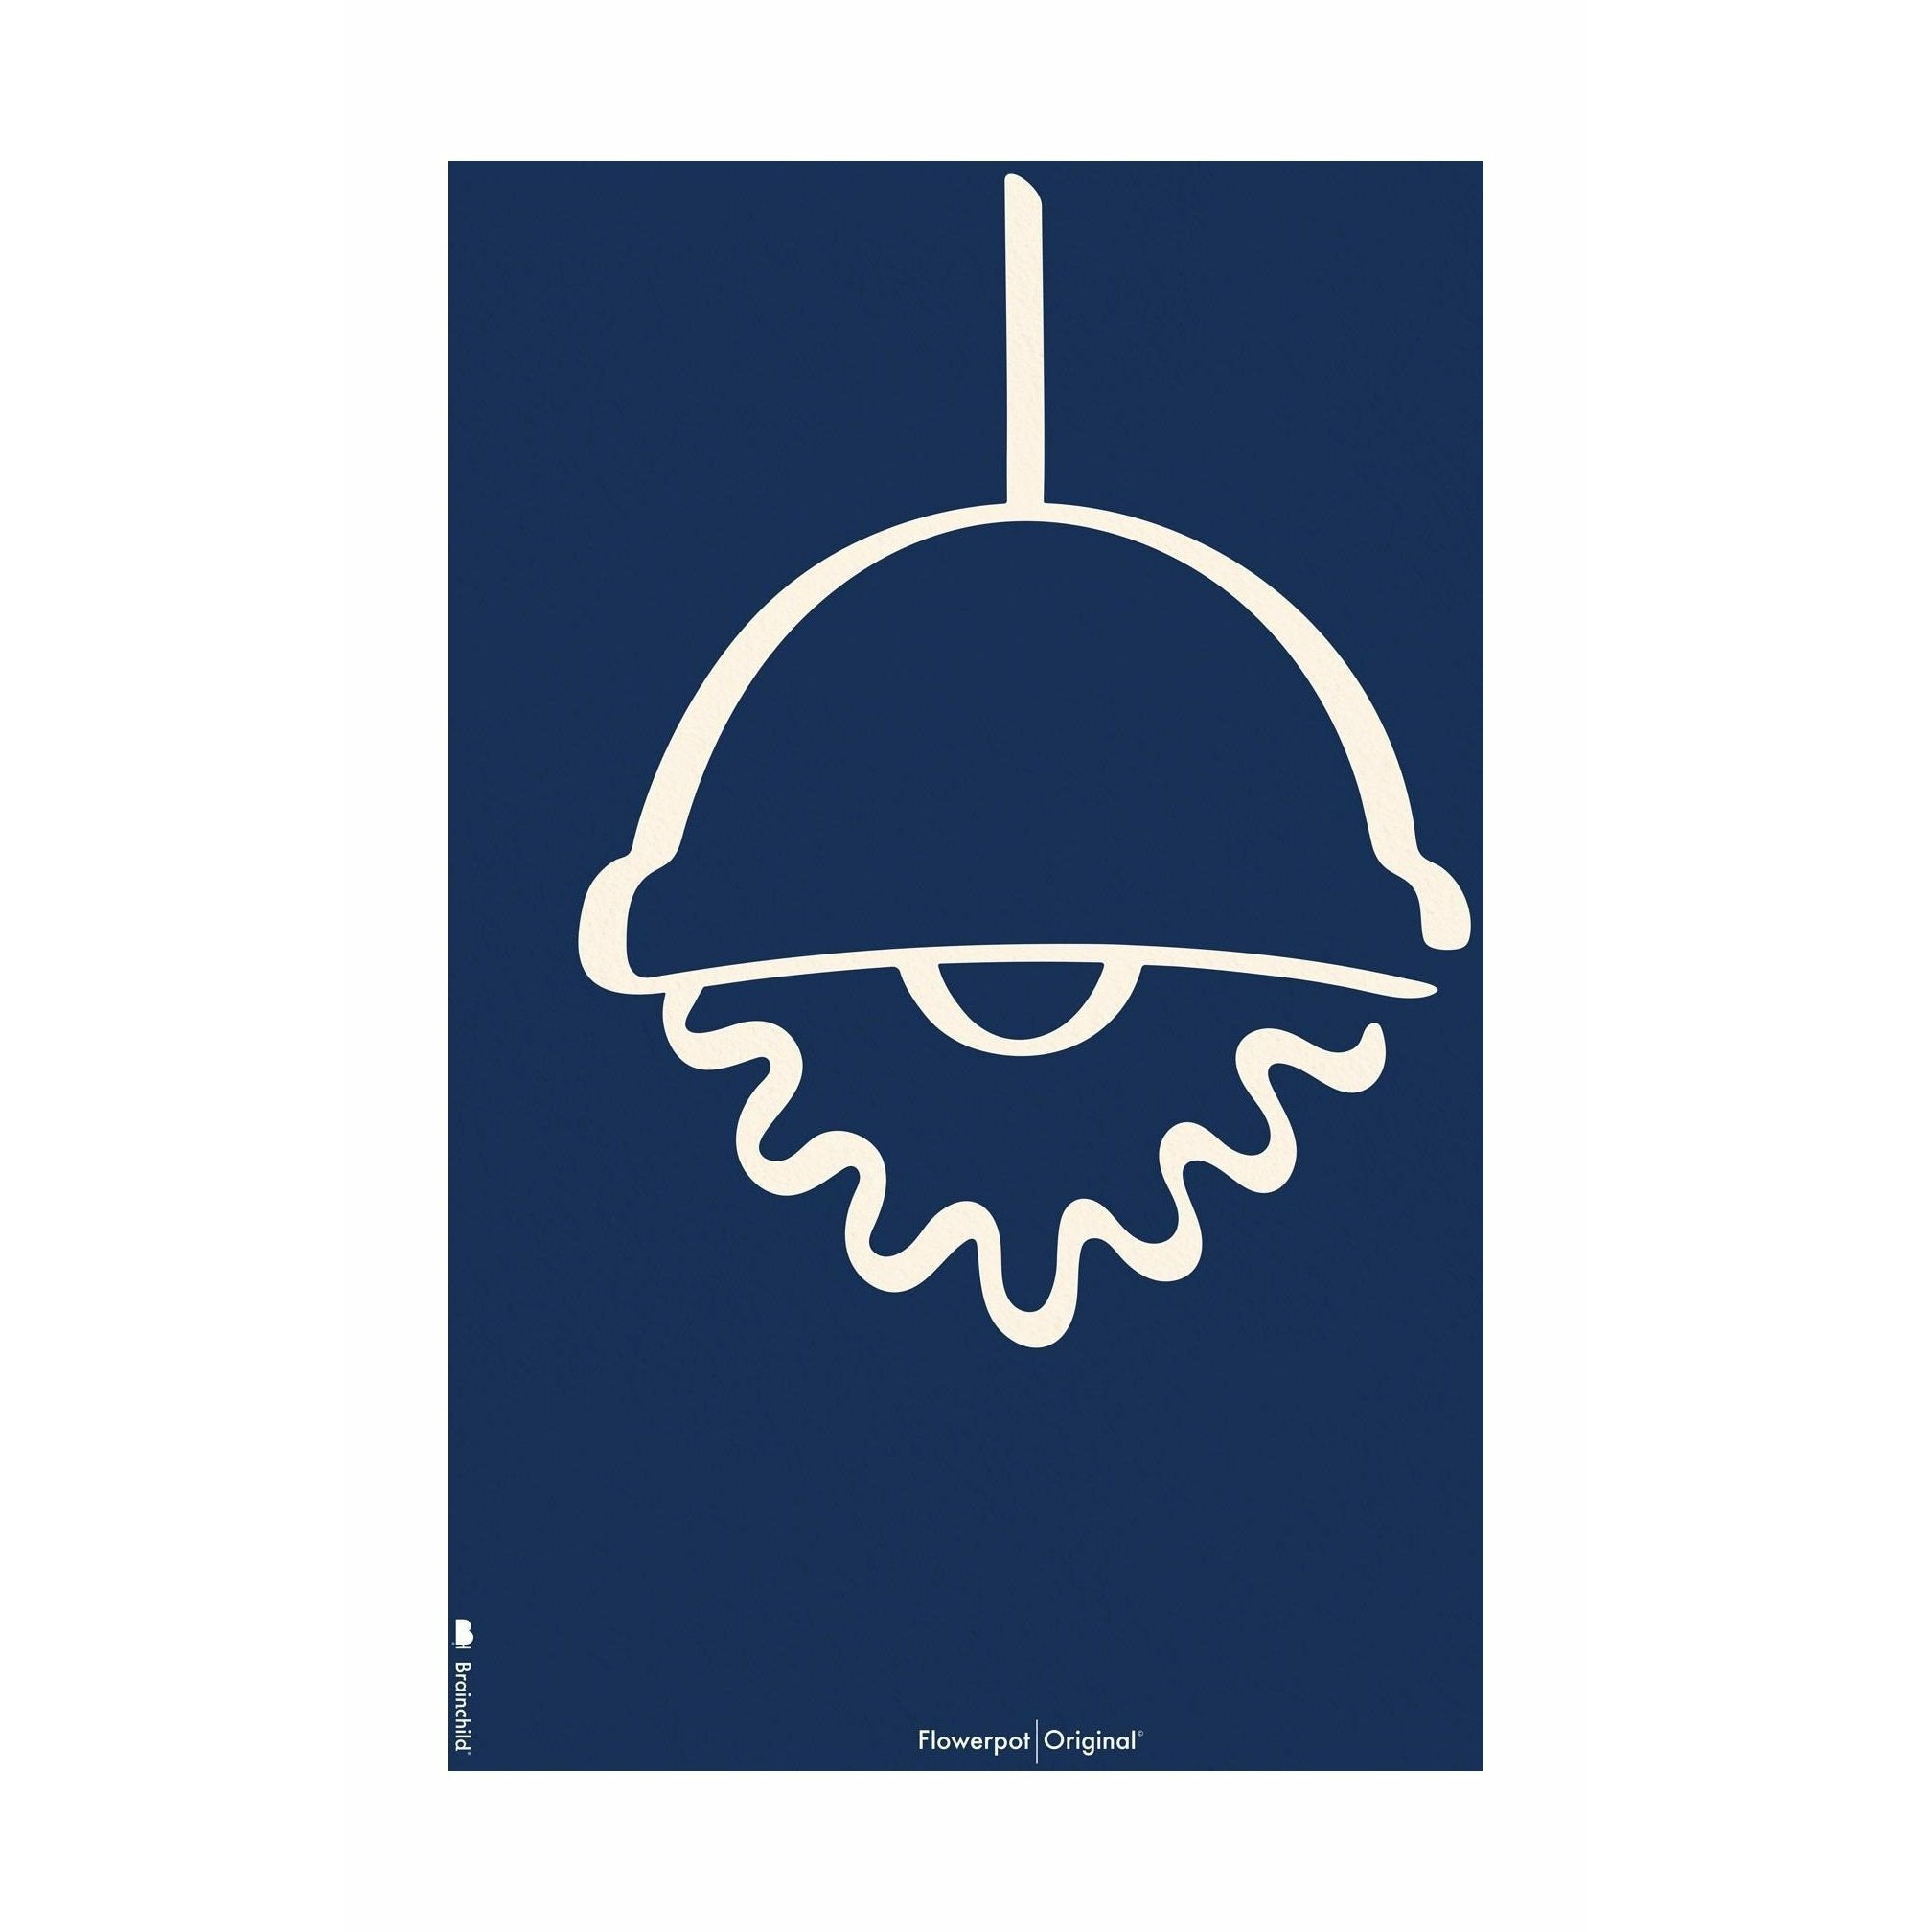 Plakát Brainchild Flowerpot Line bez rámu 50x70 cm, modré pozadí